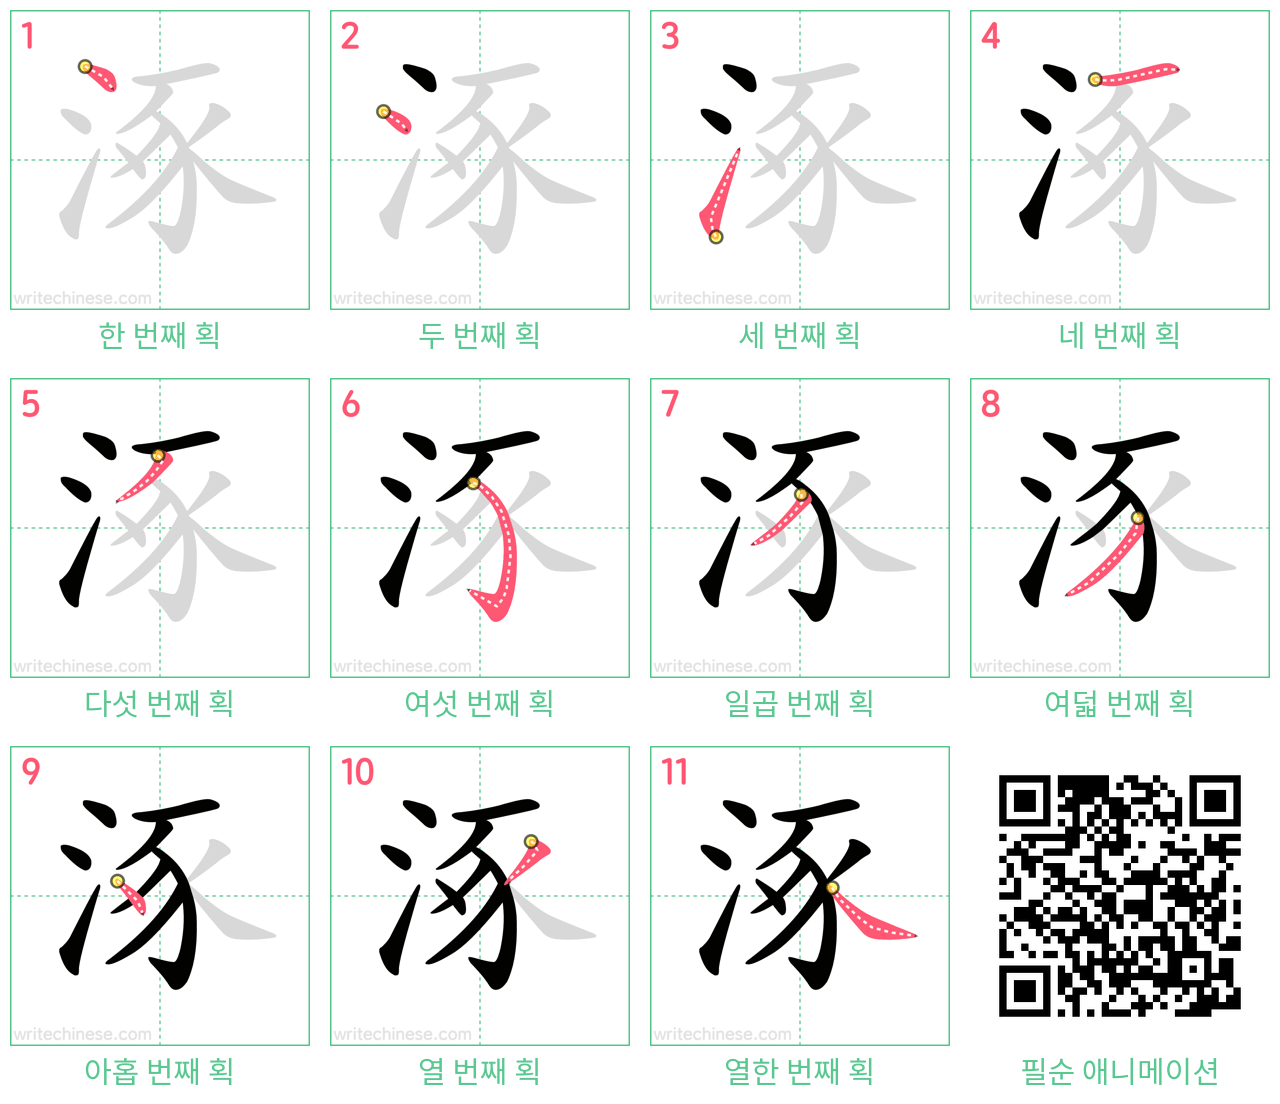 涿 step-by-step stroke order diagrams